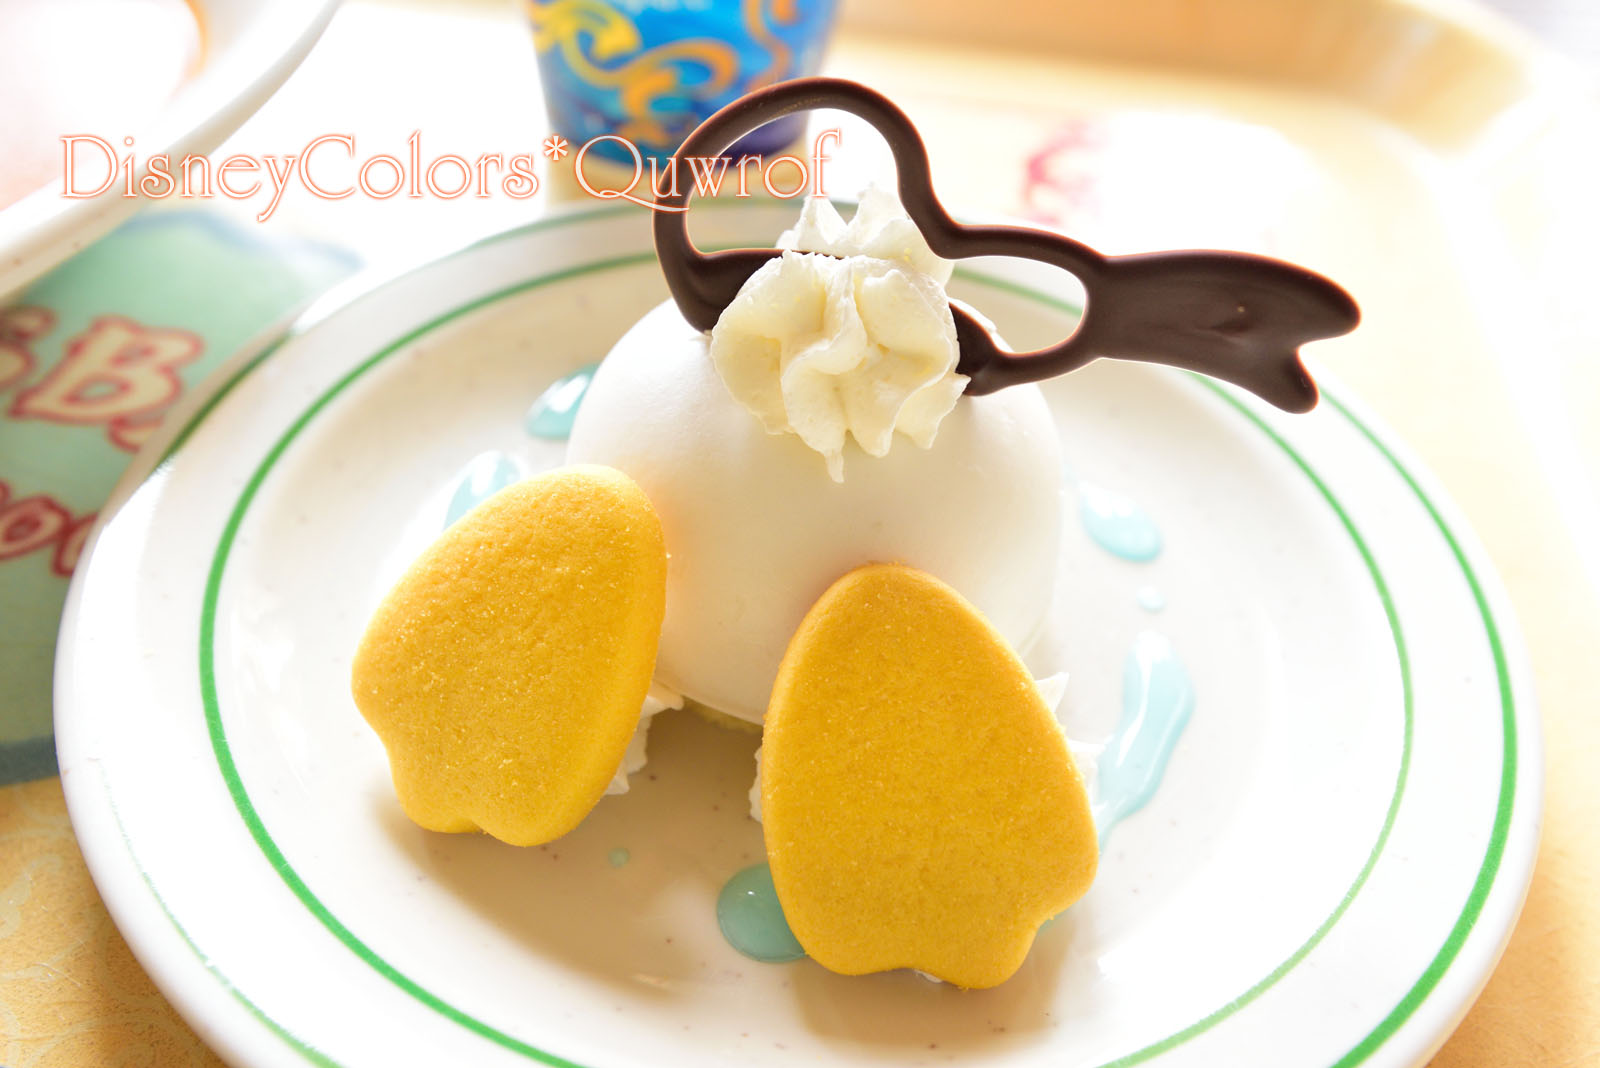 ドナルドのもふ尻デザートが絶品の15周年カレー カスバ フードコート 02 Disney Colors Blog